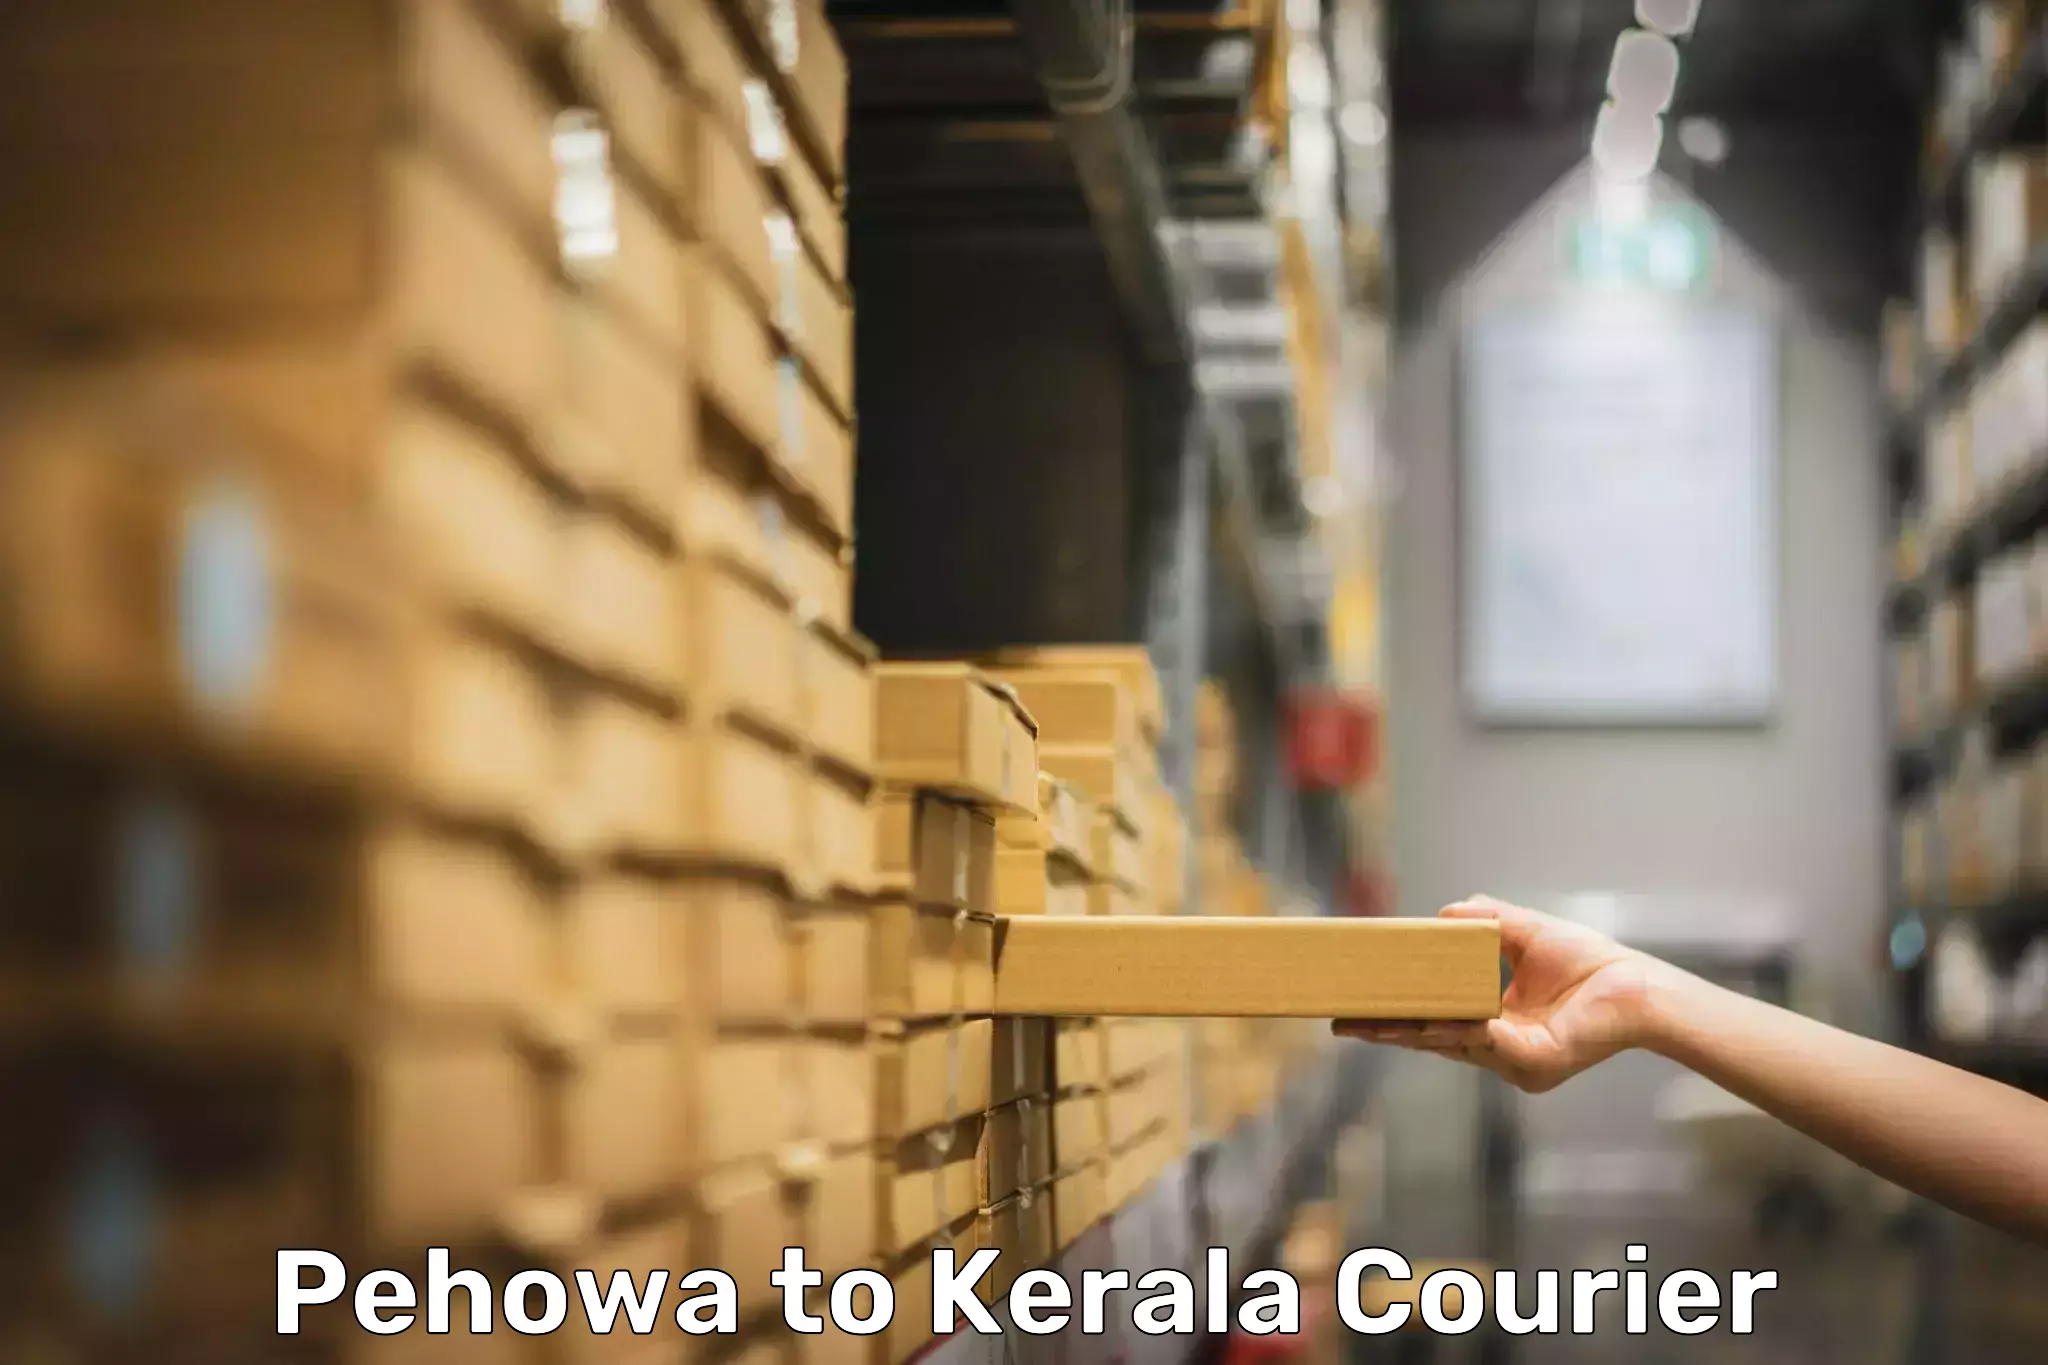 Personal effects shipping Pehowa to Cochin Port Kochi